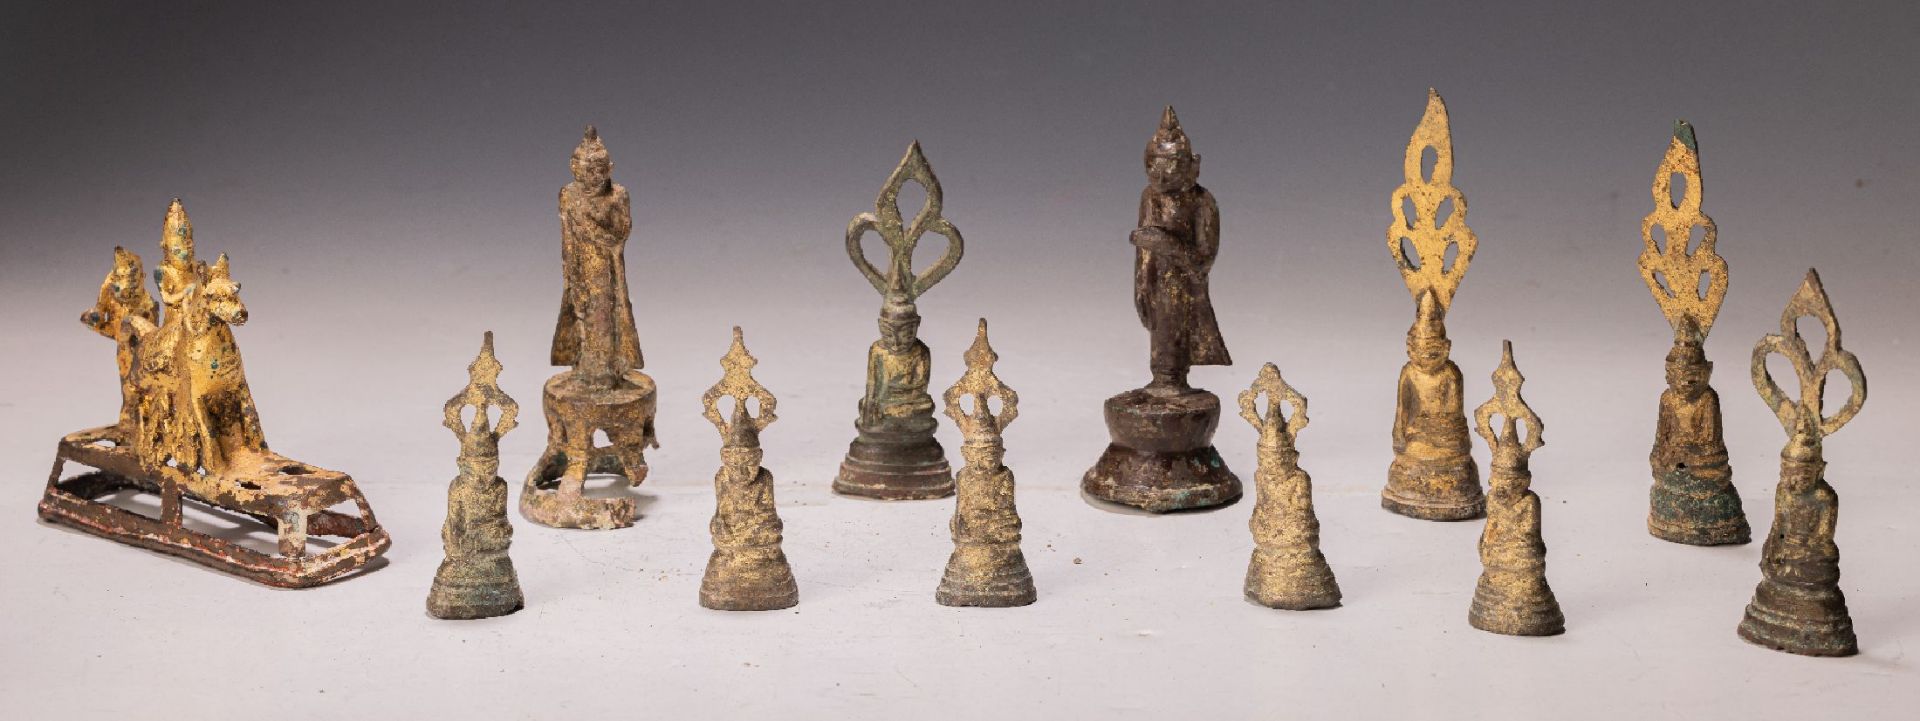 12 Bronzefiguren, Burma, Amarapura Zeit, 17./18. Jh.,  9x